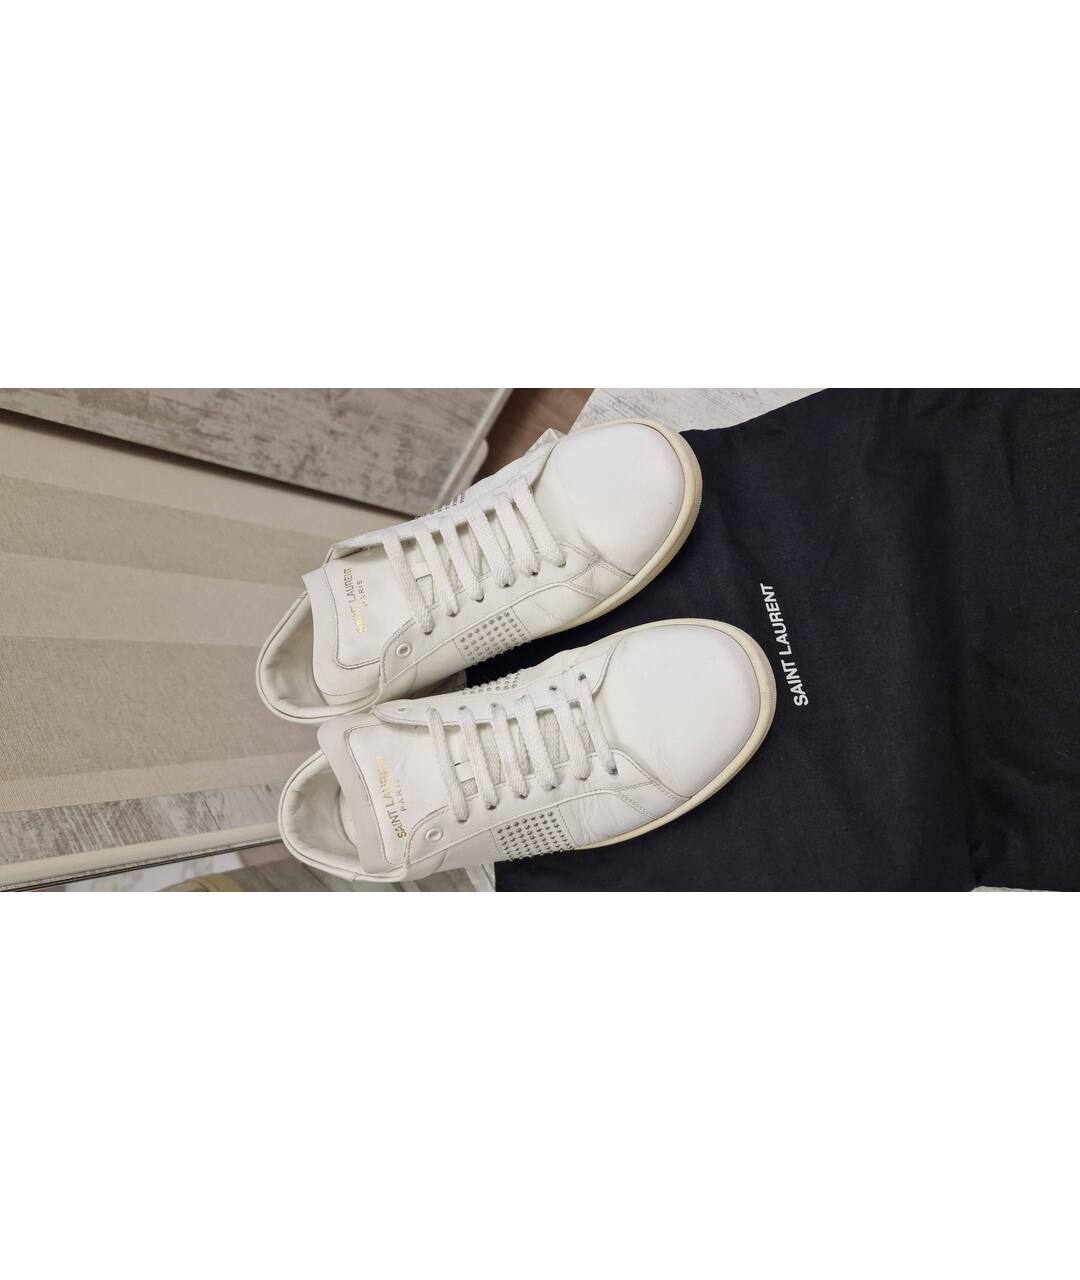 SAINT LAURENT Белые кожаные кроссовки, фото 2